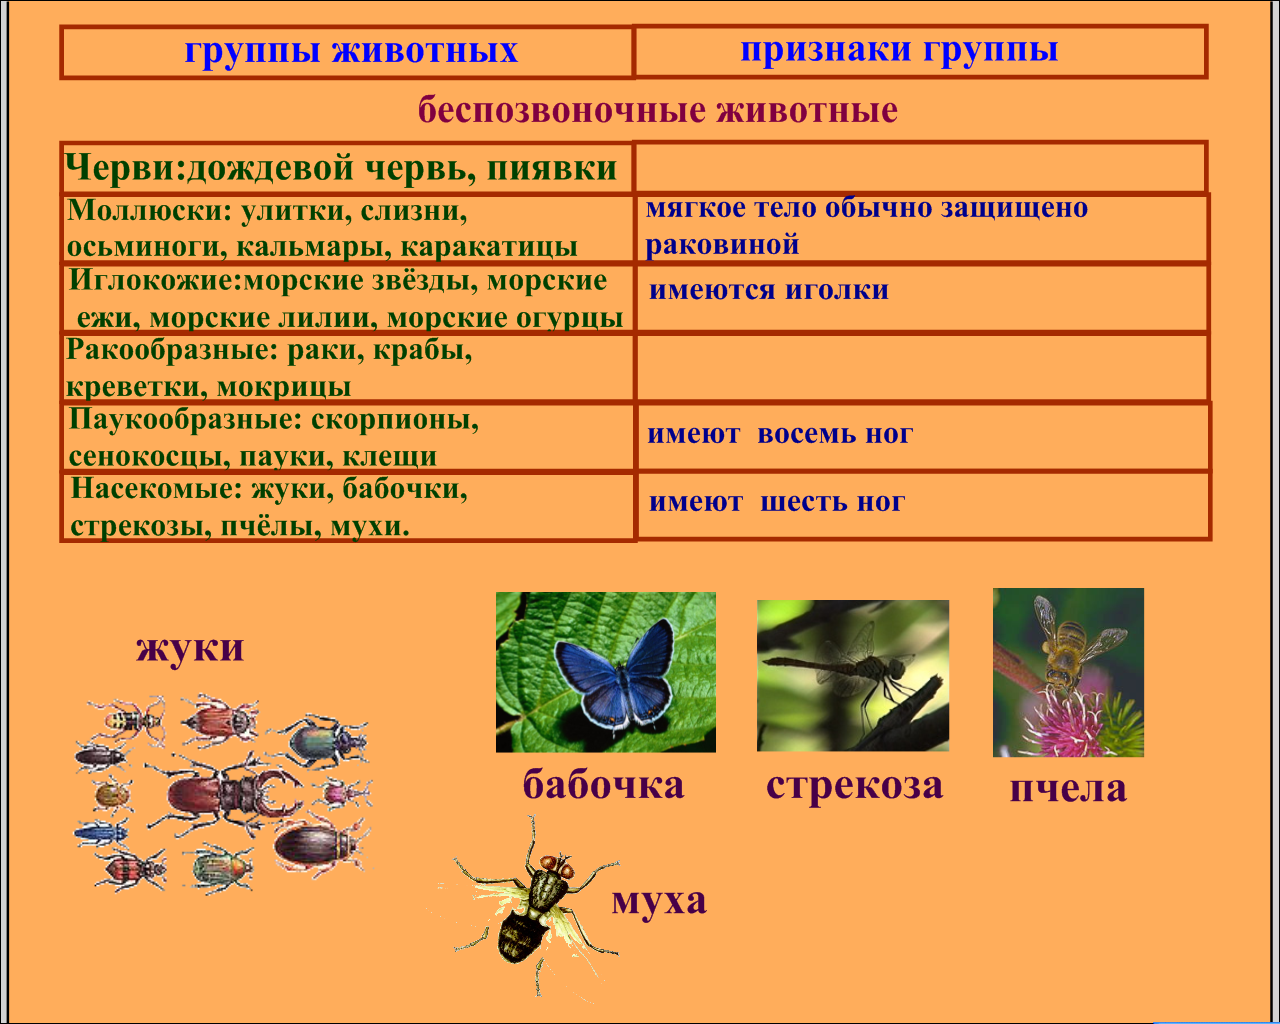 Насекомые сходства и различия. Разновидности насекомых. Группы класса насекомые. Беспозвоночные животные. Признаки класса насекомые.